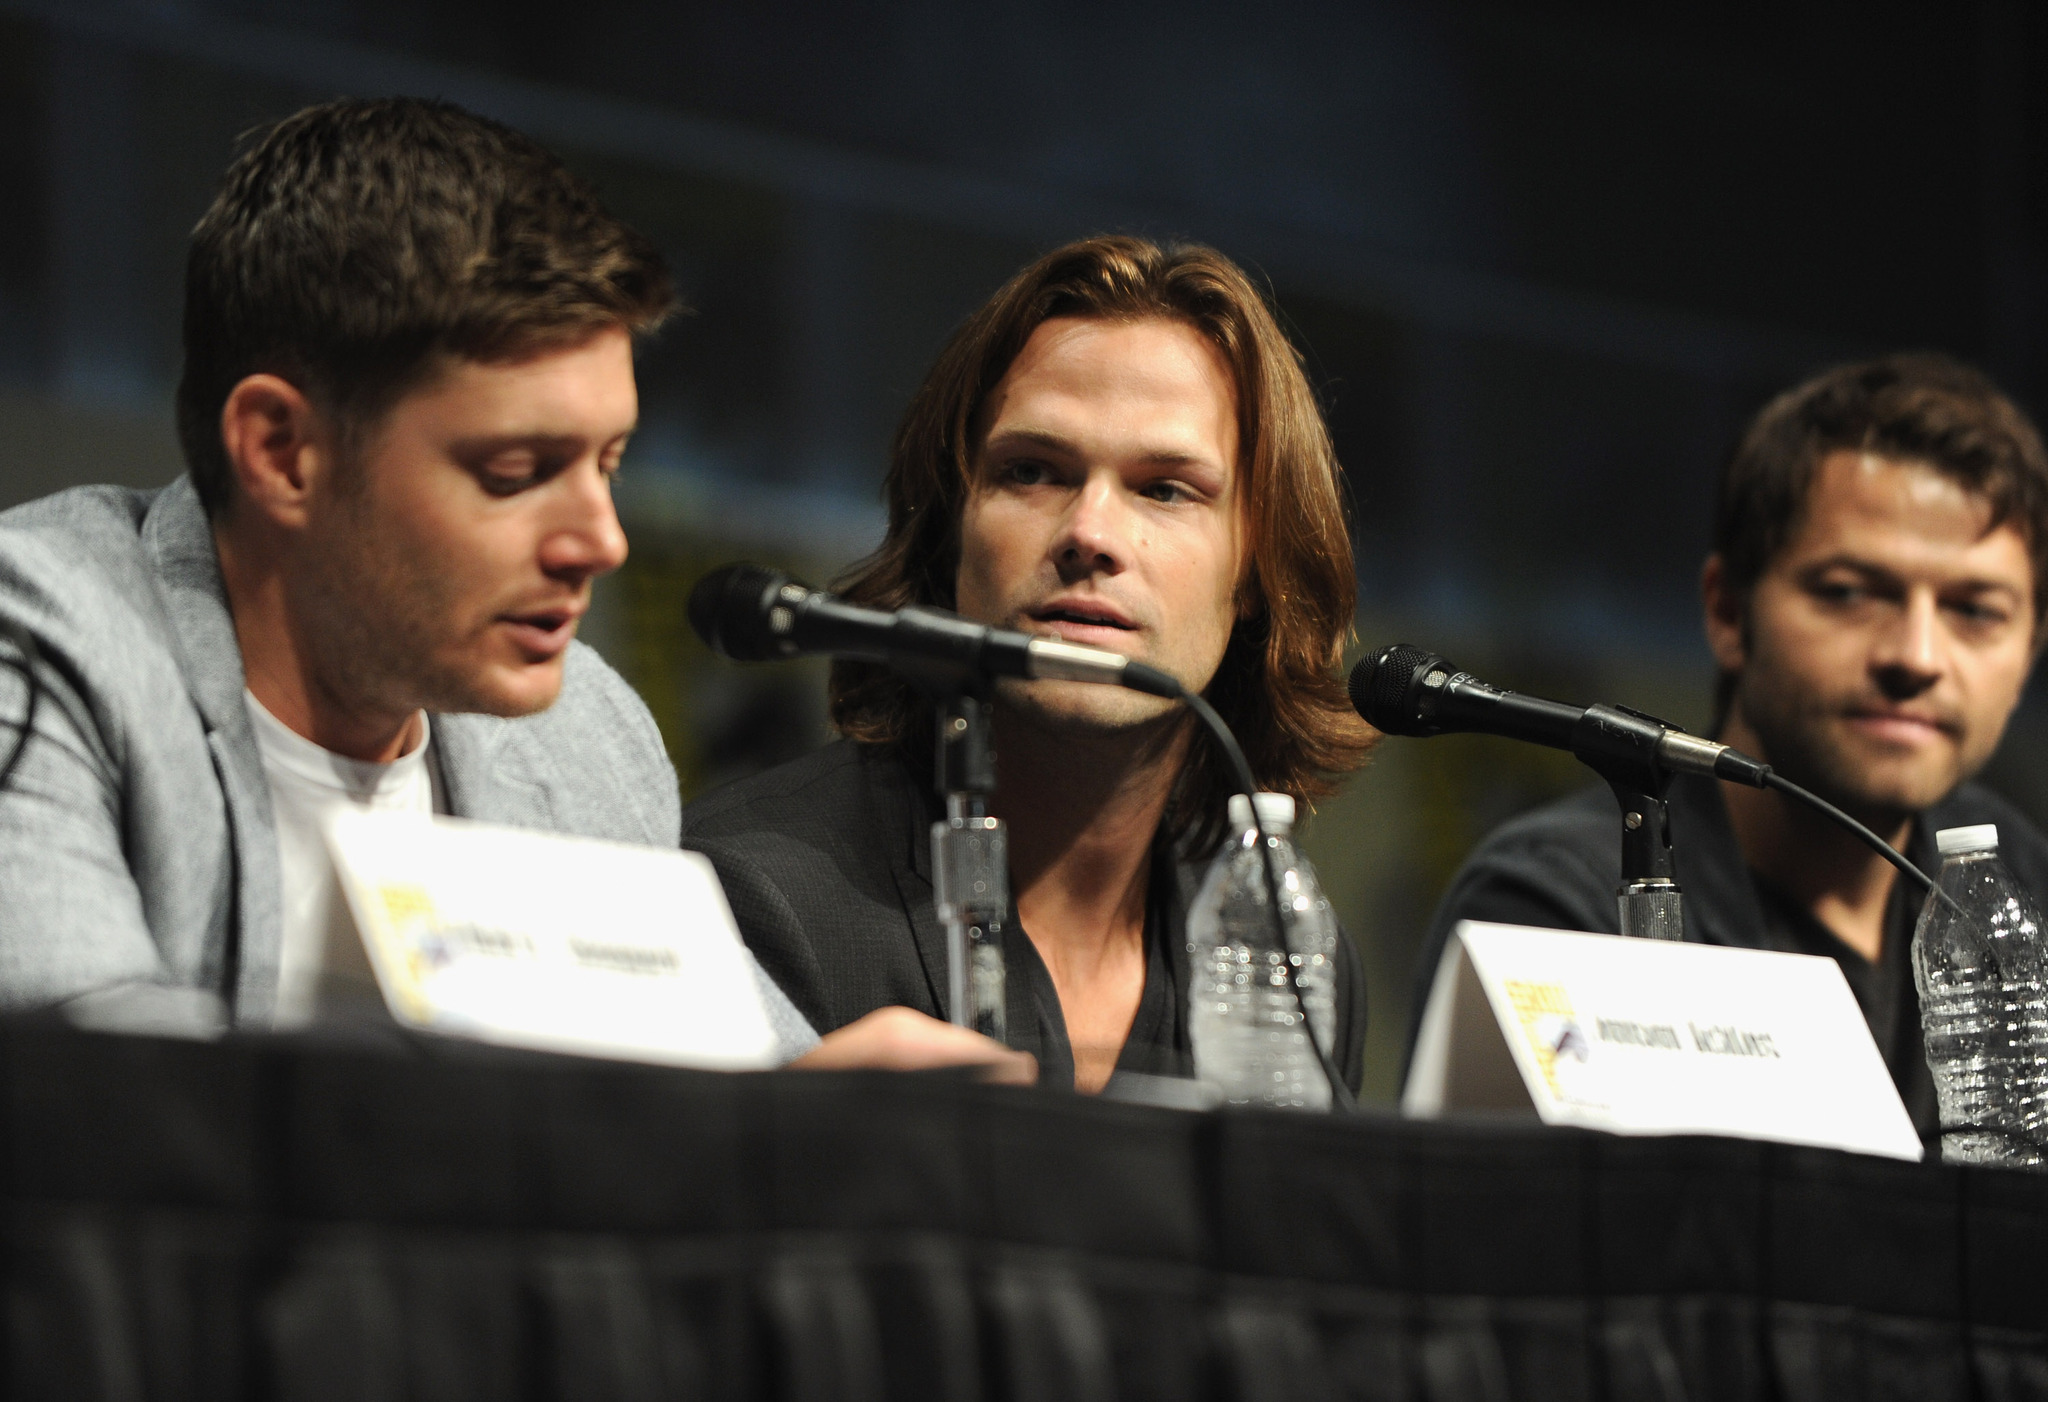 Jensen Ackles, Misha Collins and Jared Padalecki at event of Supernatural (2005)